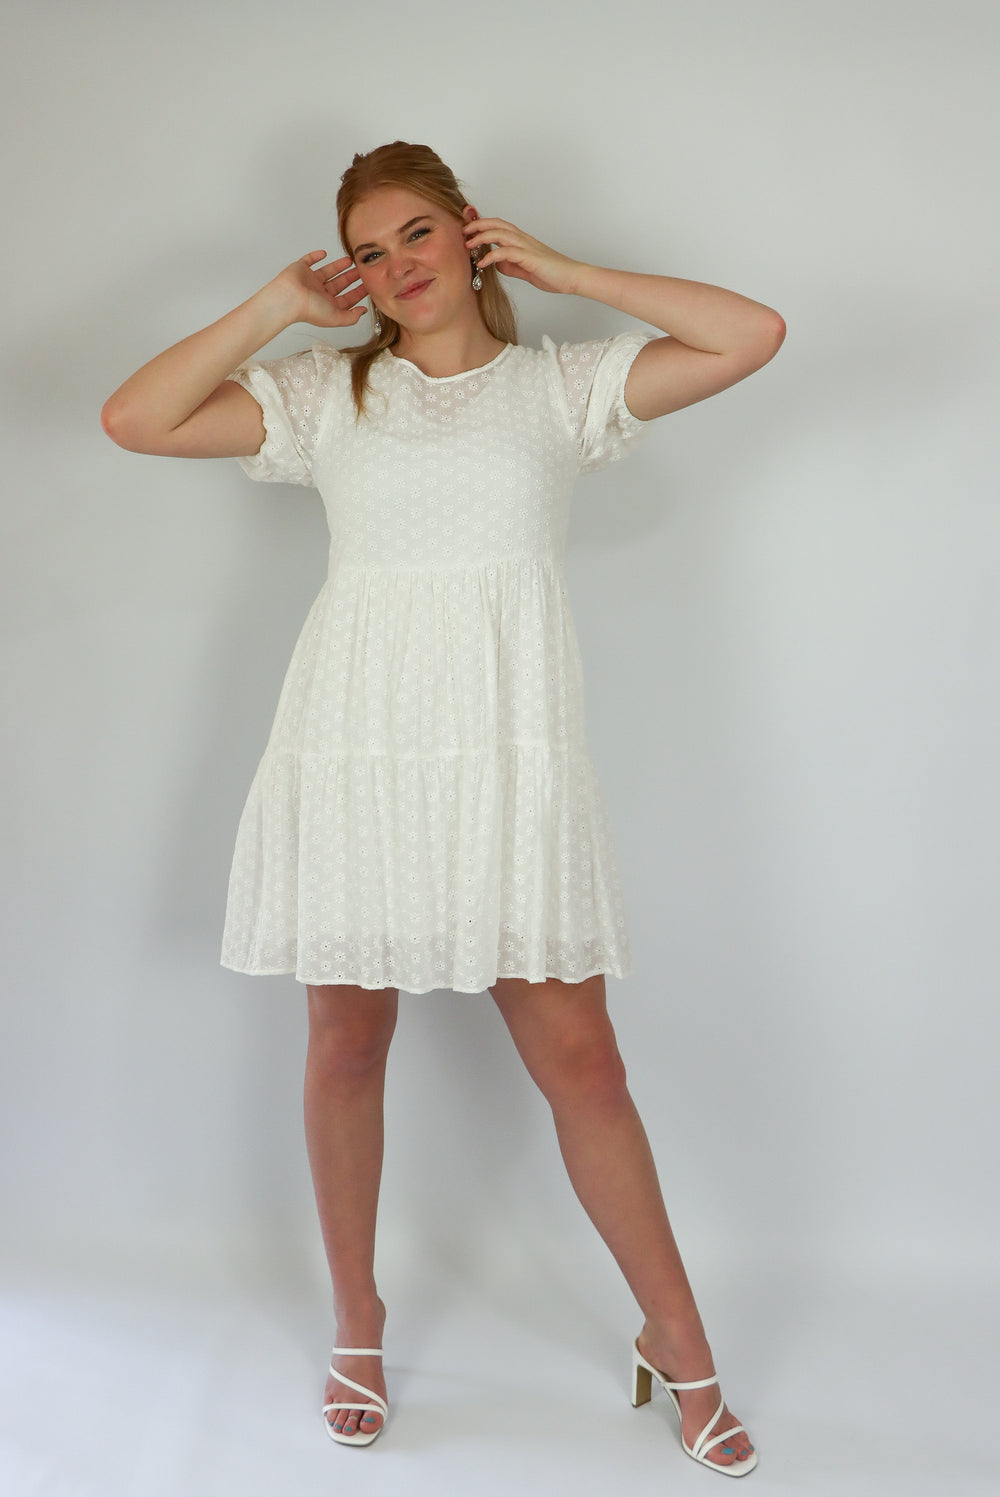 Knee length white dress for summer